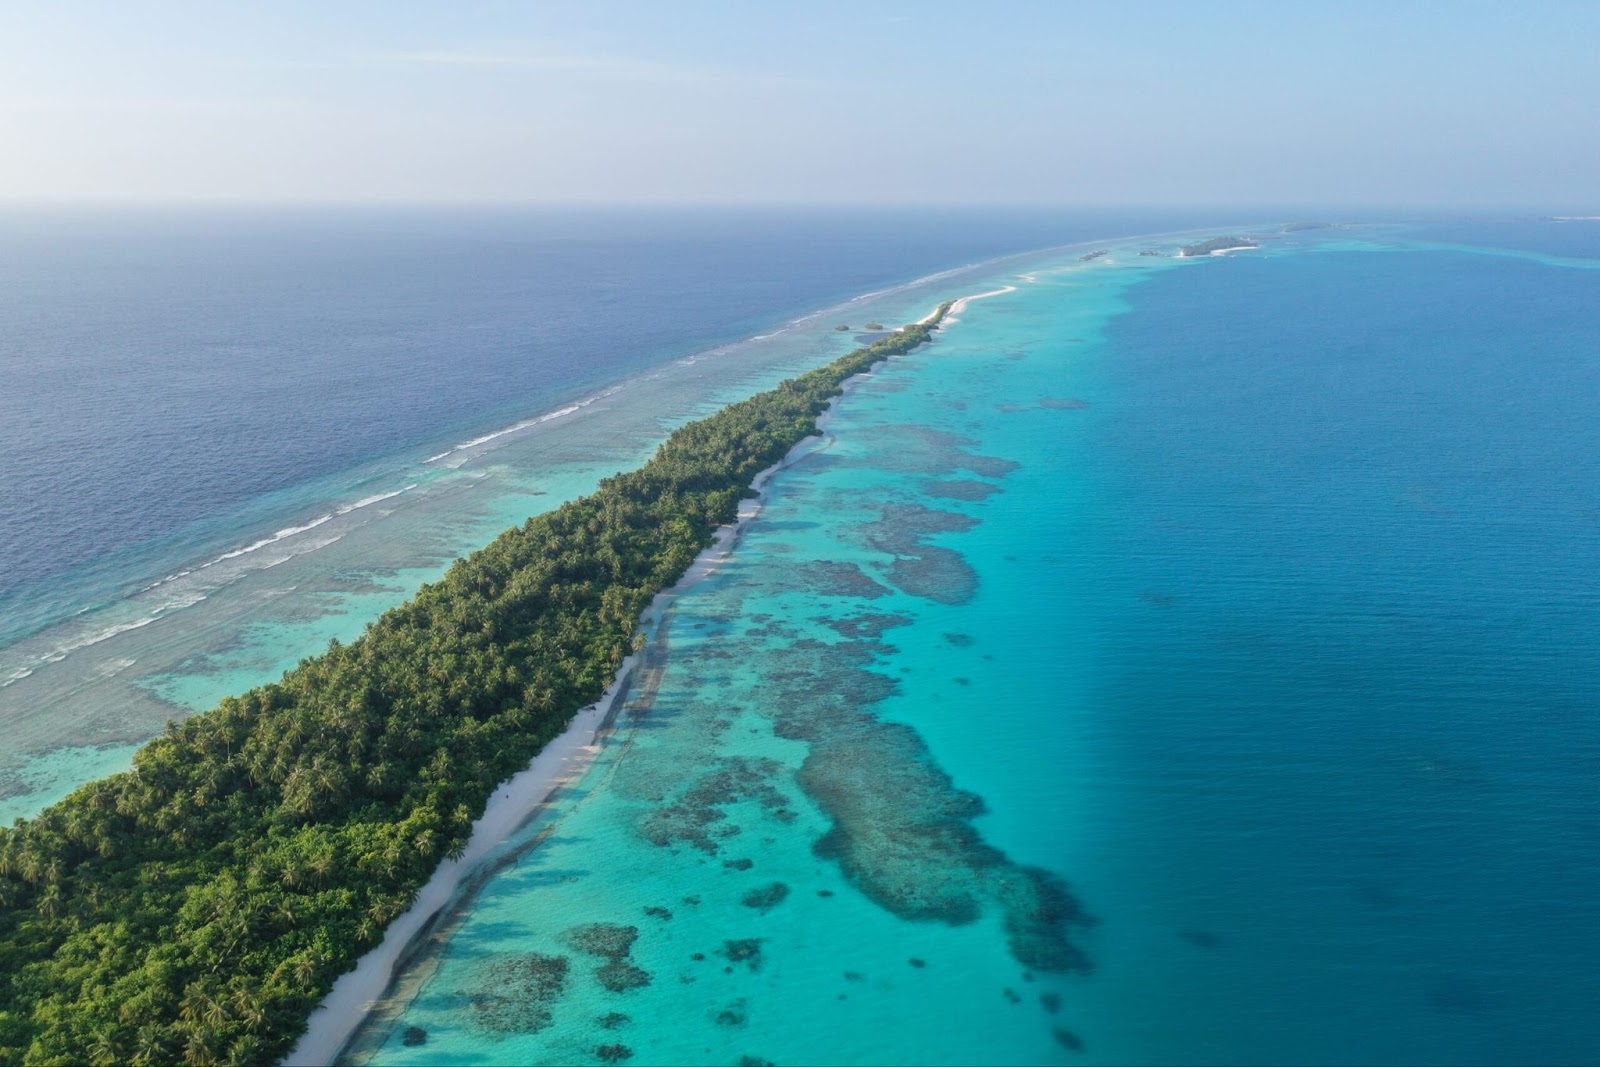 Photo Credit: Huraa Island Maldives via Google Images